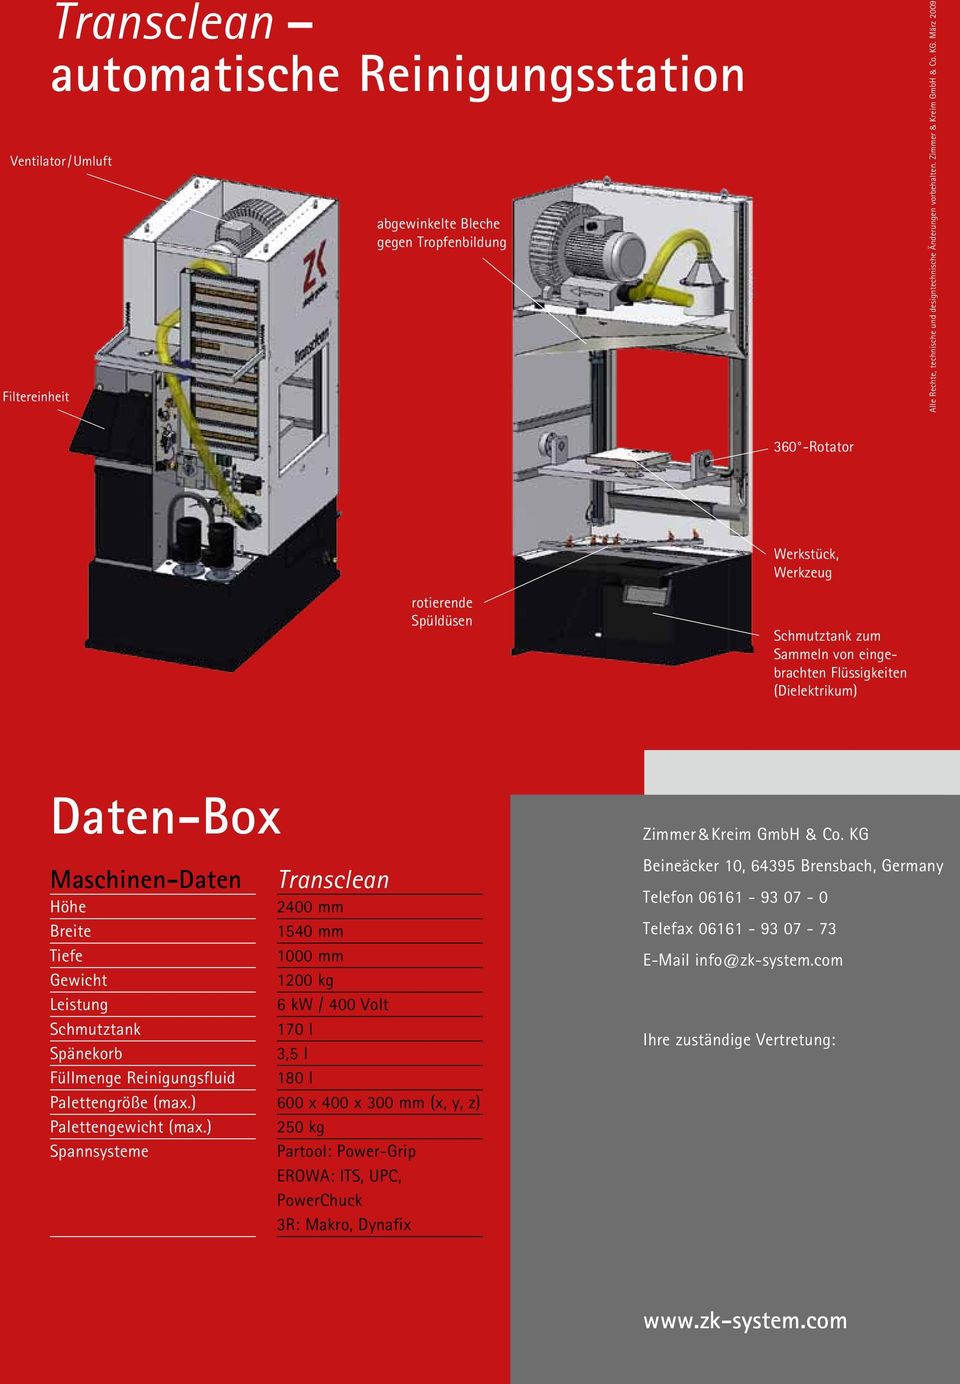 März 2009 360 -Rotator rotierende Spüldüsen Erodiermaschine genius 602 Daten-Box Werkstück, Werkzeug Schmutztank zum Sammeln von eingebrachten Flüssigkeiten (Dielektrikum) Zimmer&Kreim GmbH & Co.